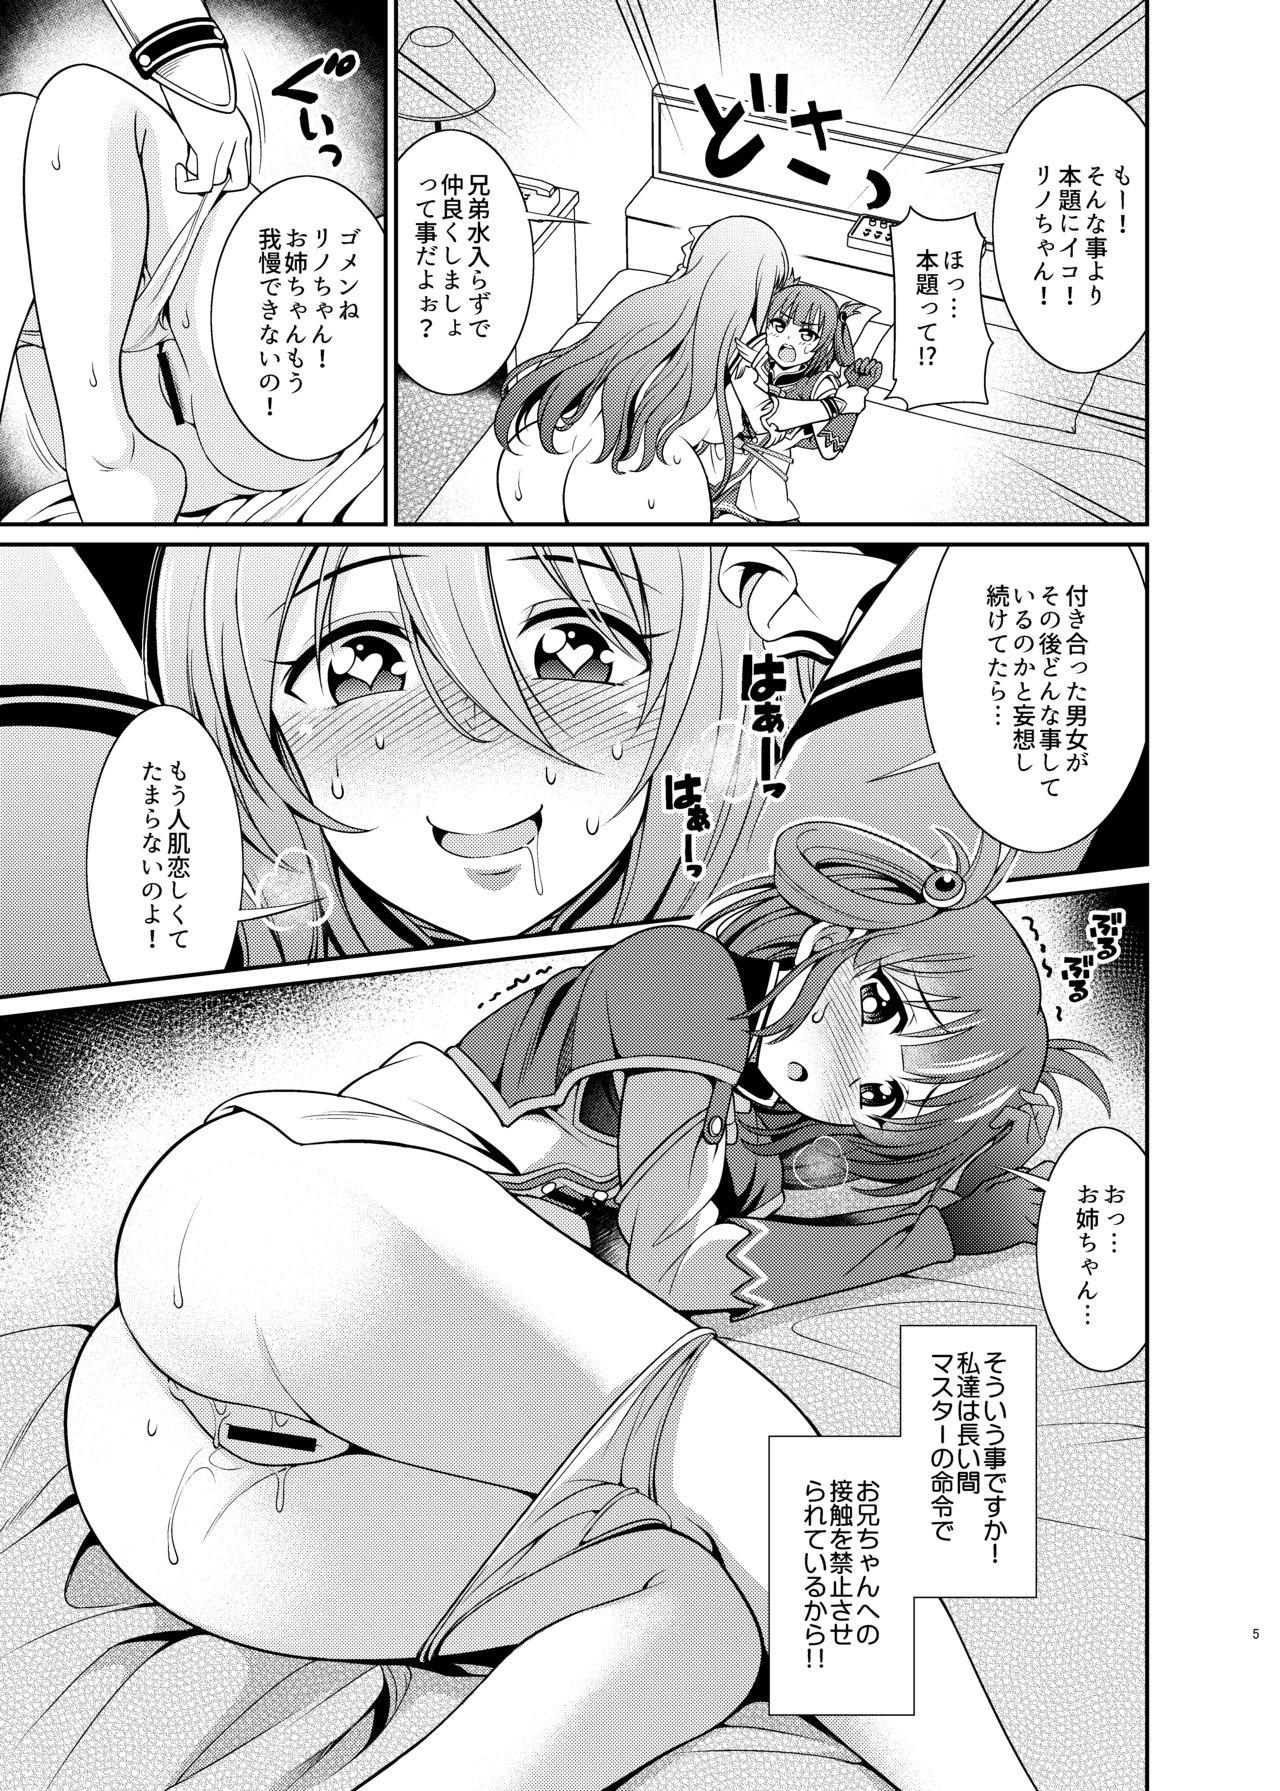 Clothed Kinyoku Seikatsu nante Kiwameru kara... Ochinchin ga Haechaun desu yo! - Princess connect Free Amateur - Page 5